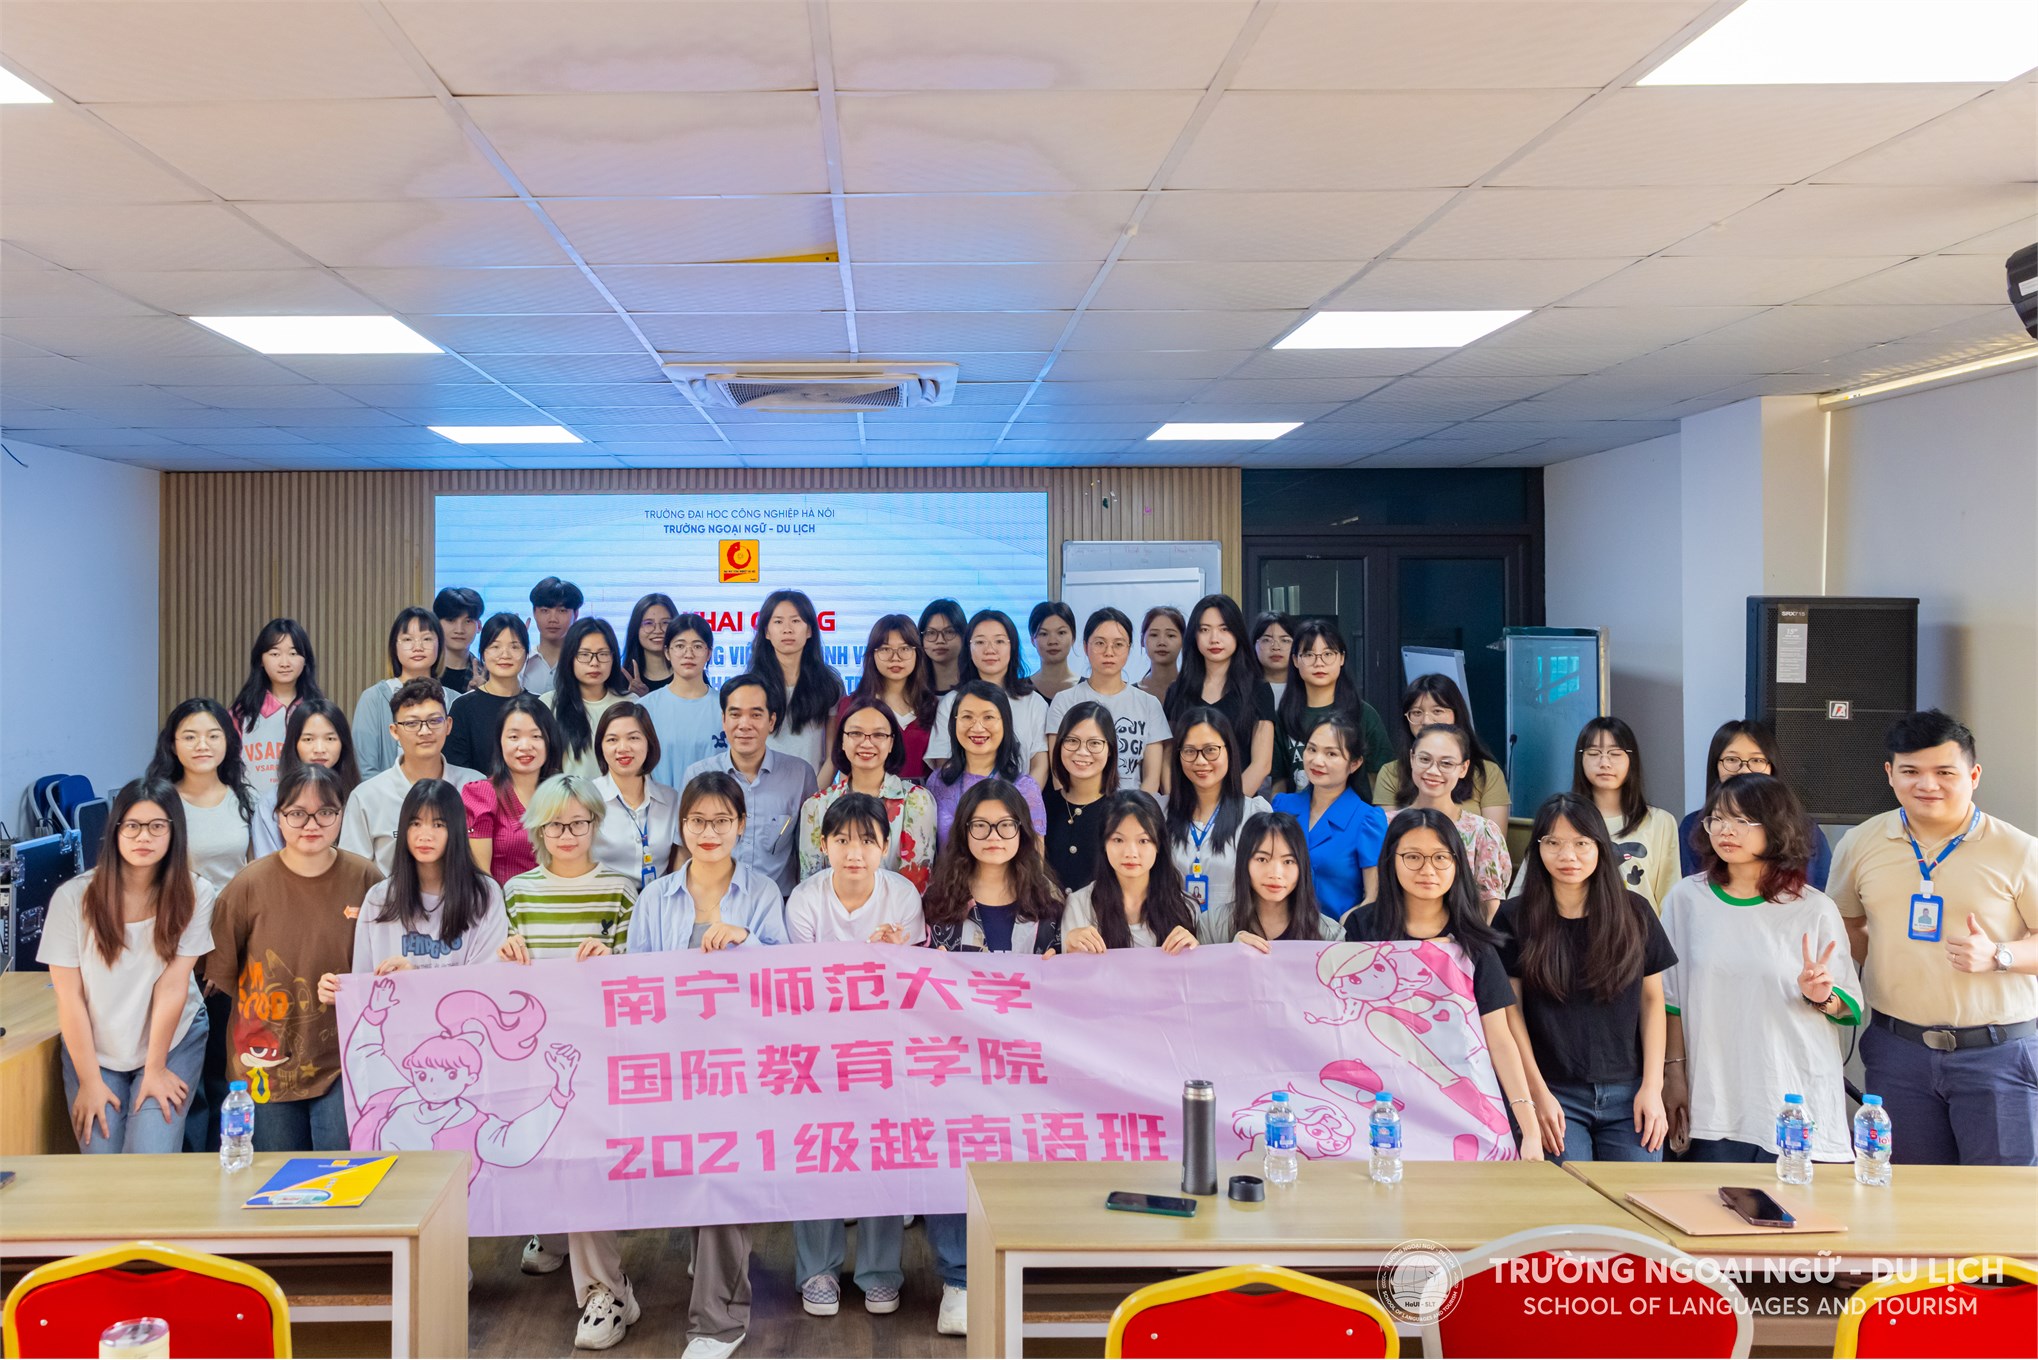 Khai giảng khoá đào tạo Tiếng Việt ngắn hạn cho sinh viên Trường Đại học Sư phạm Nam Ninh, Trung Quốc